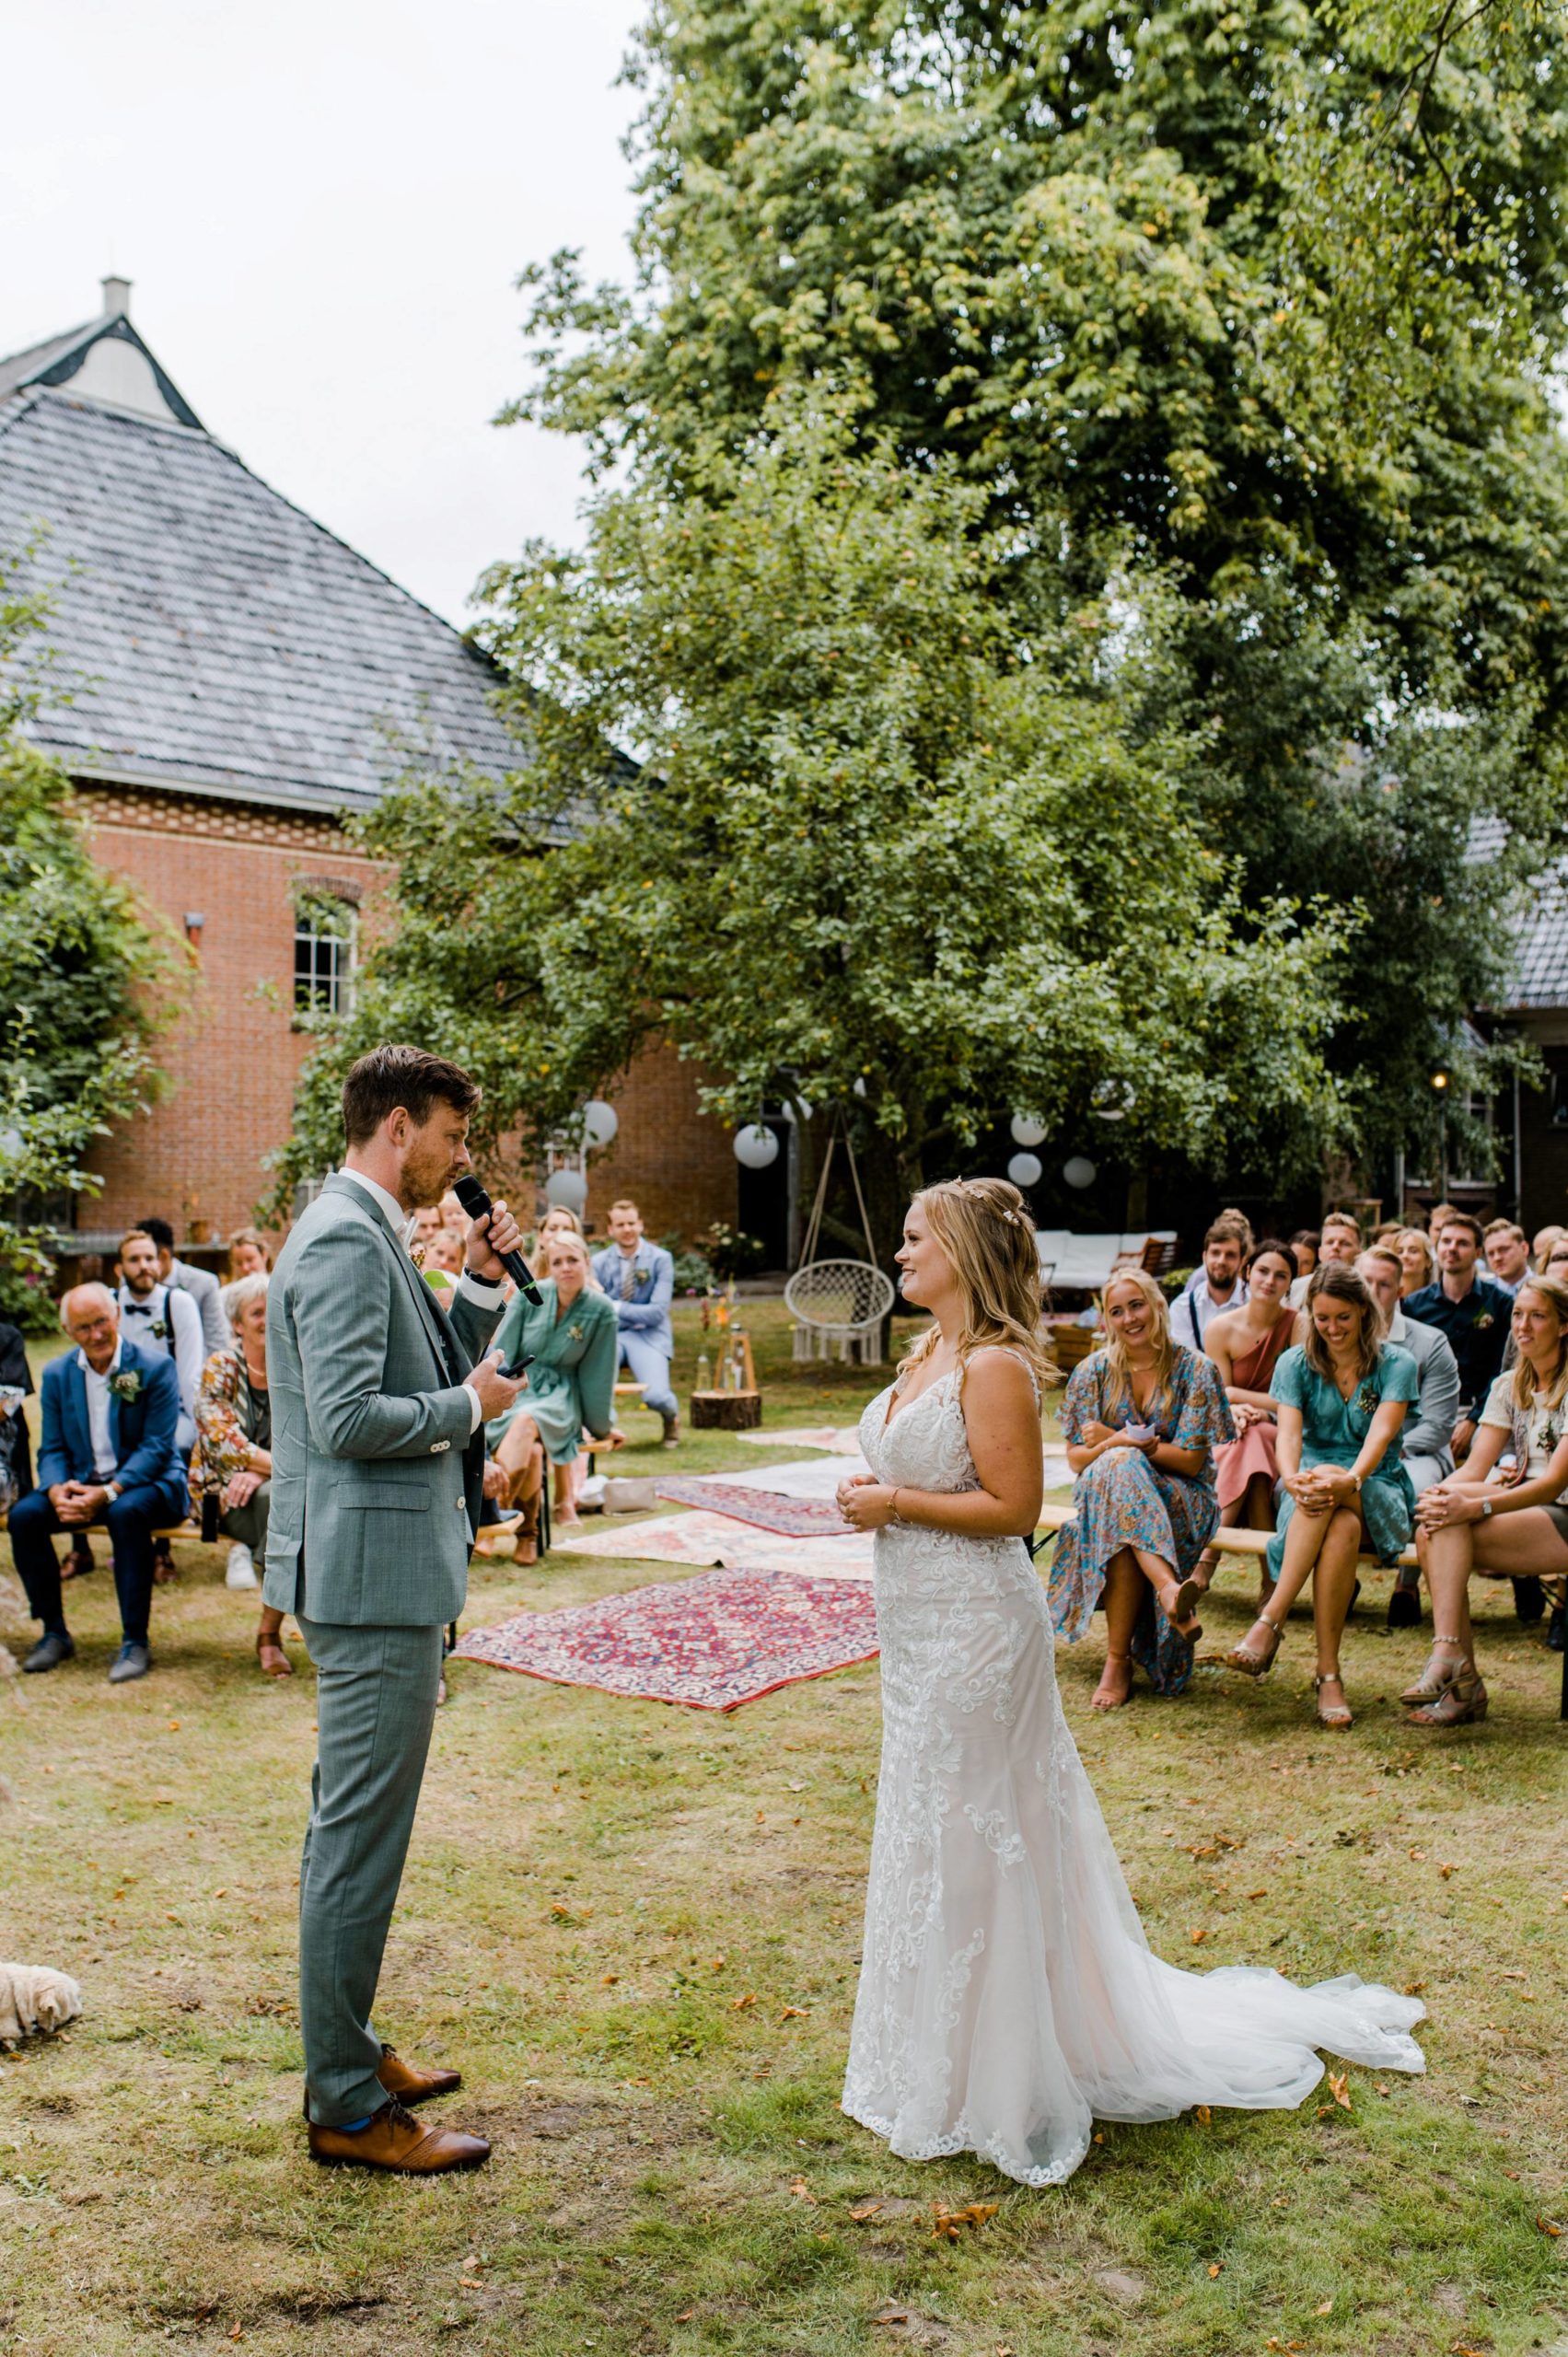 Bruiloft achtertuin, boerderij ceremonie, trouwfotograaf Groningen